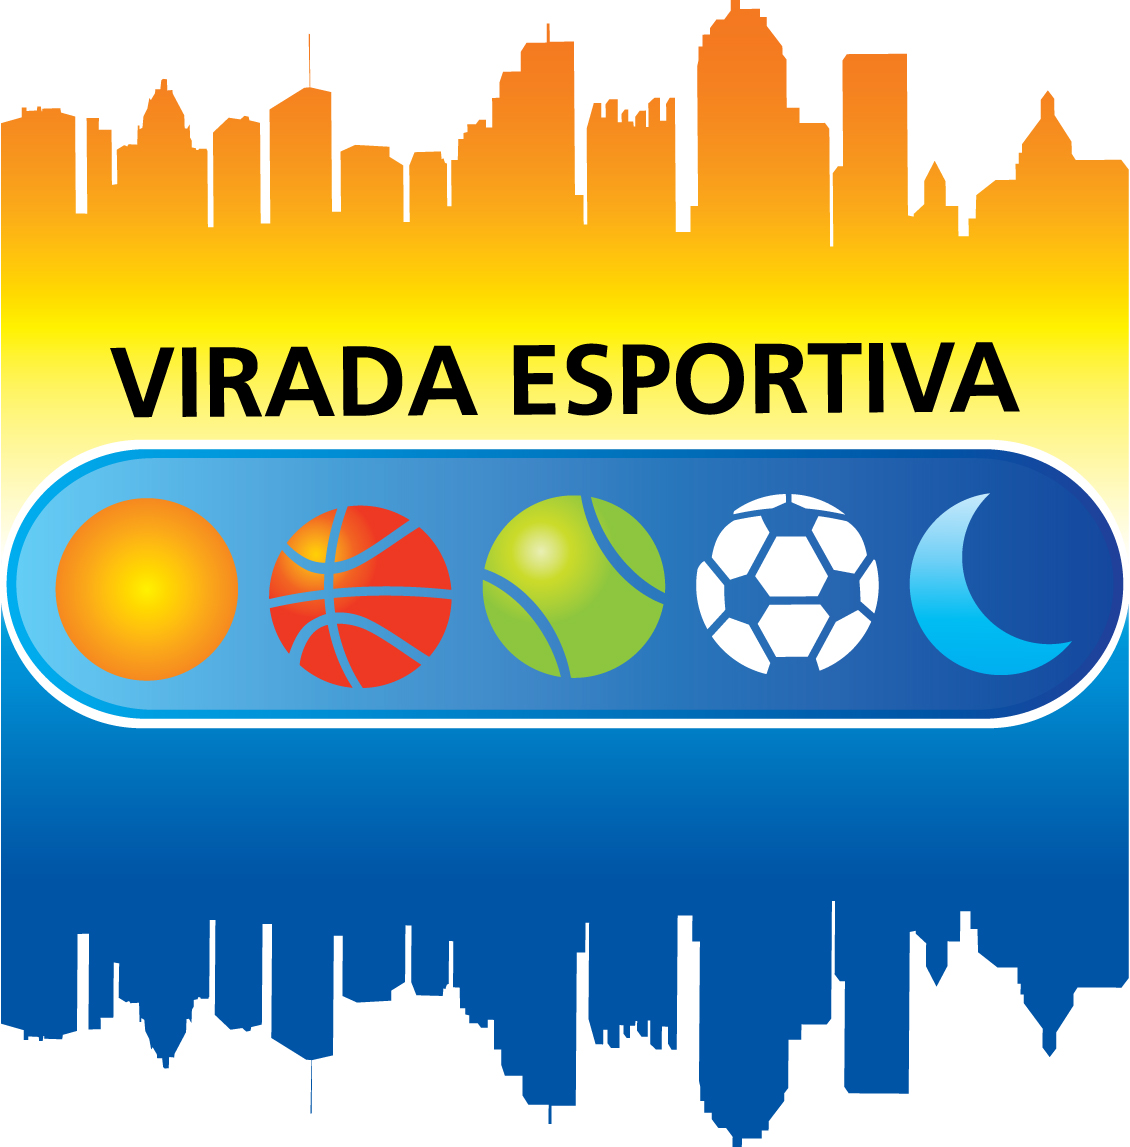 Virada Esportiva Estado de São Paulo 2013 – Programação Completa